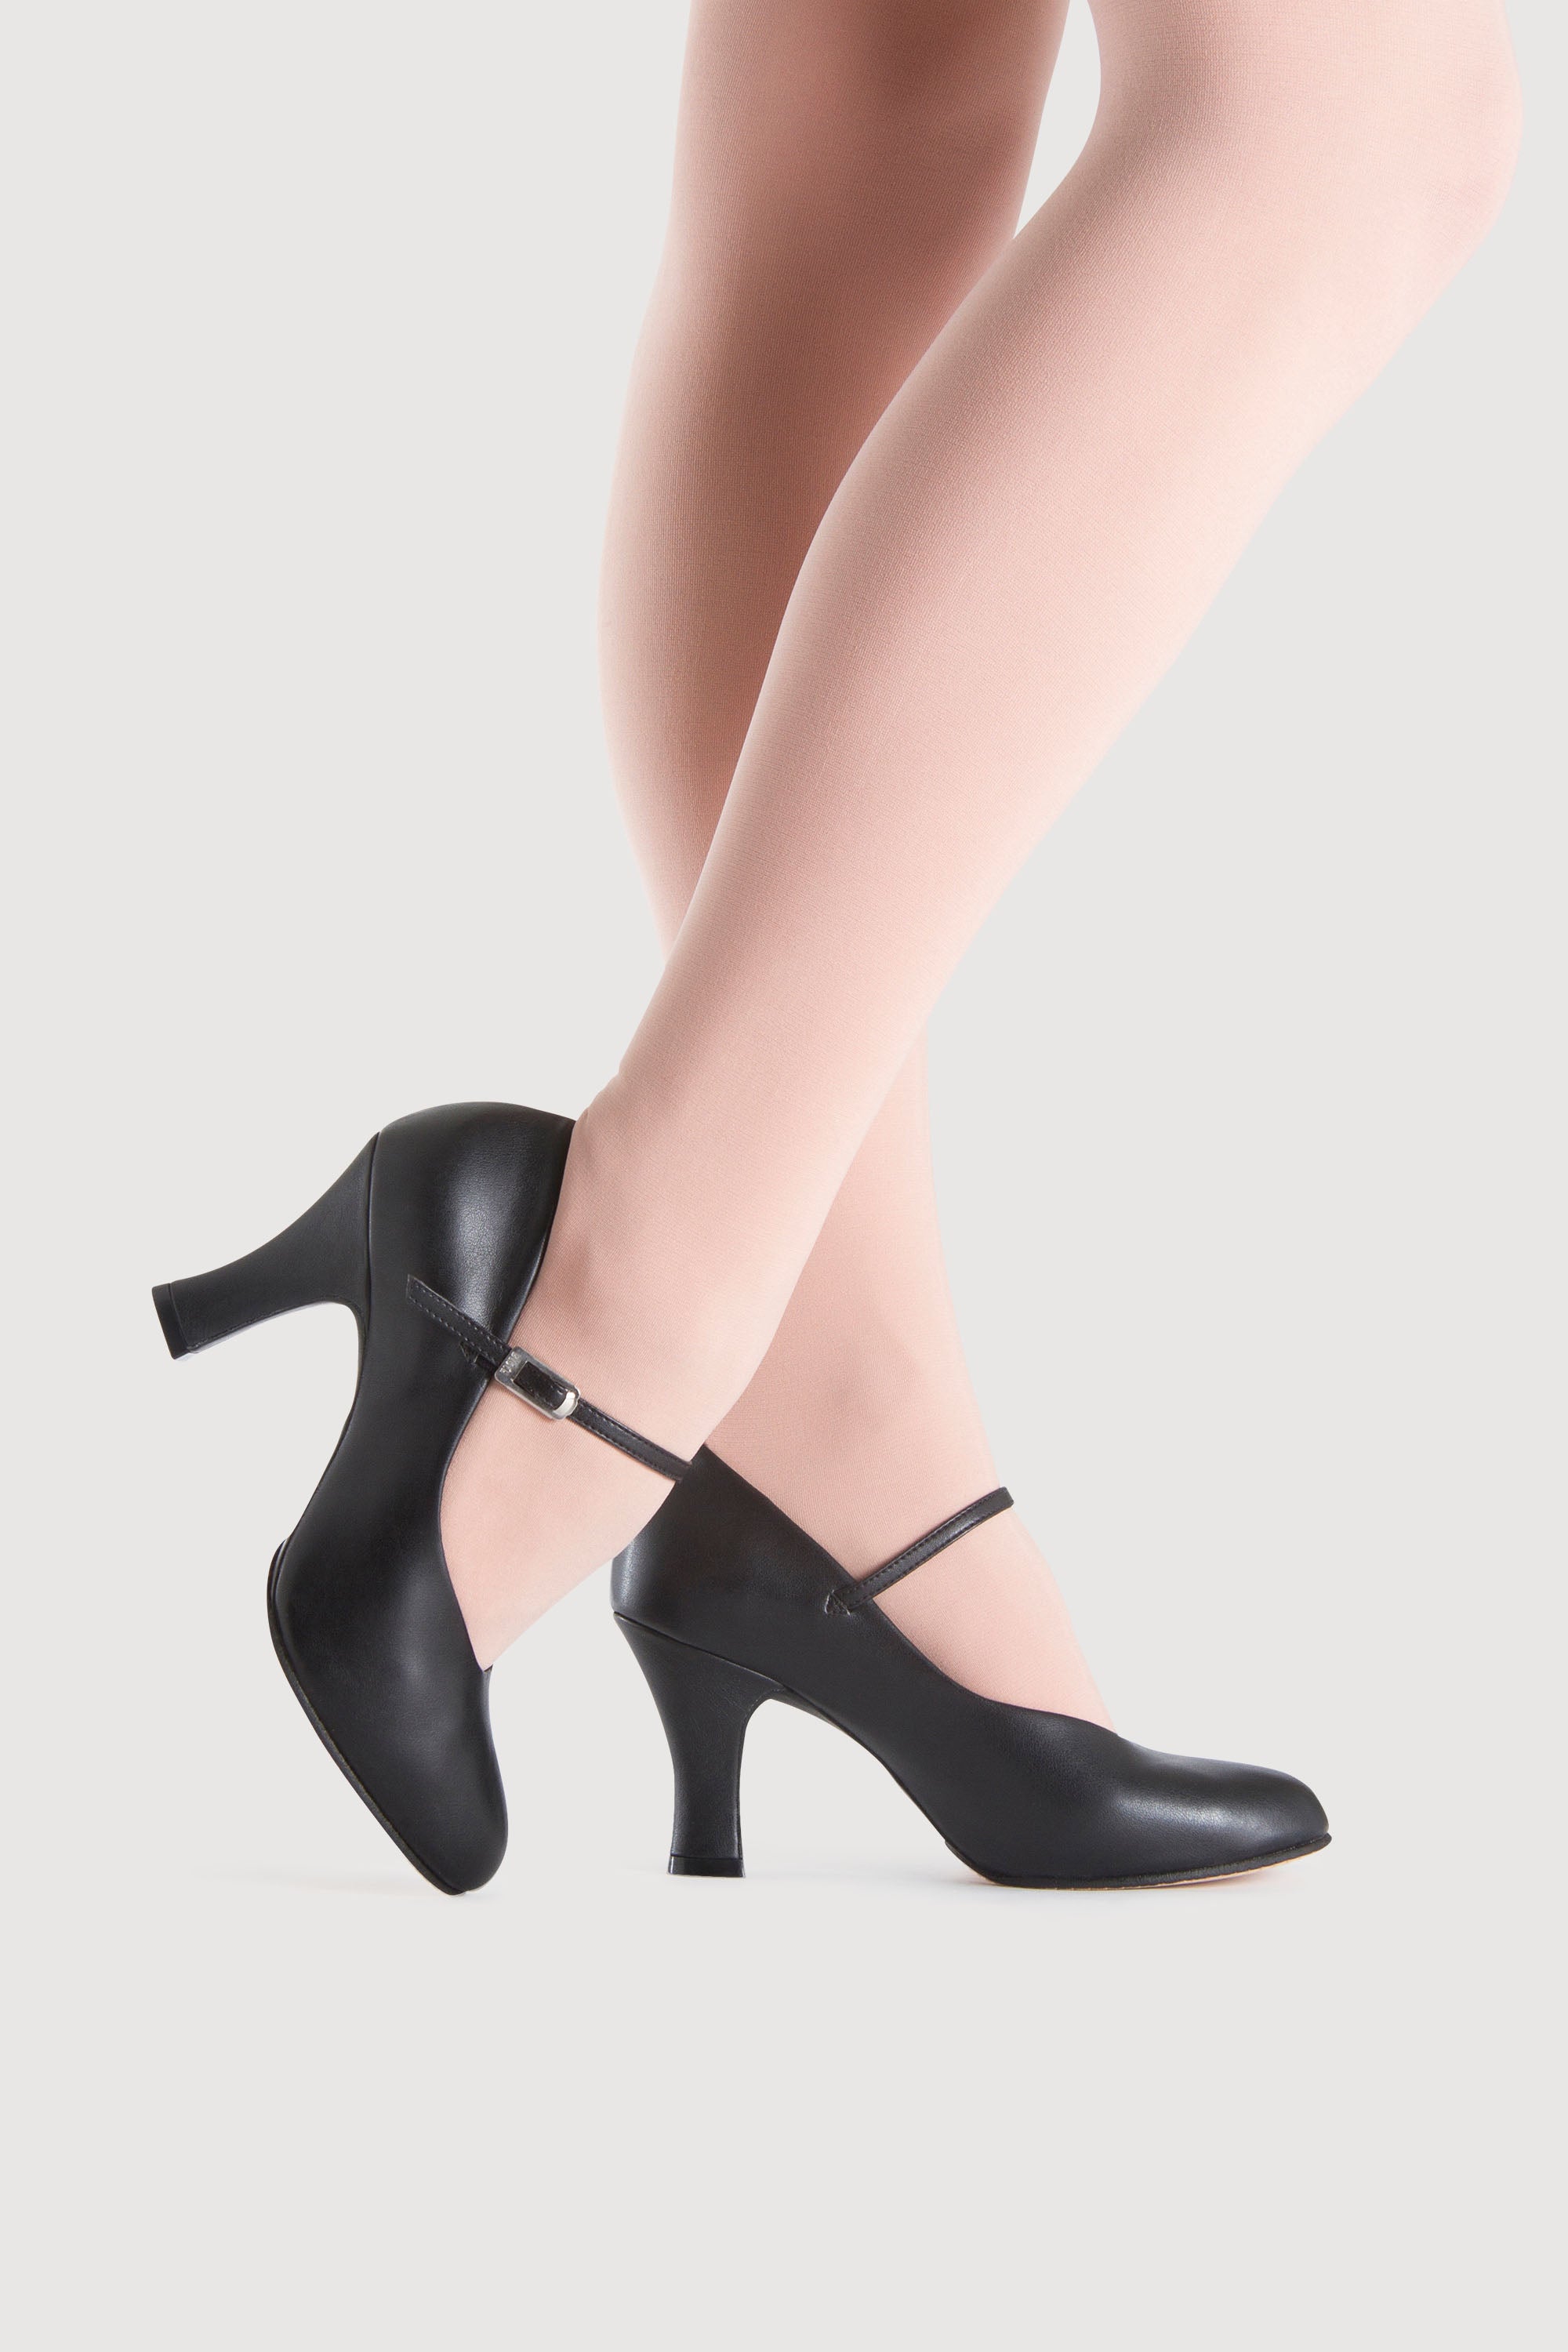 Style & Co. Women's Open Toe Dress Heels 10M Gold & Silver Sparkle 3-inch  heels | eBay